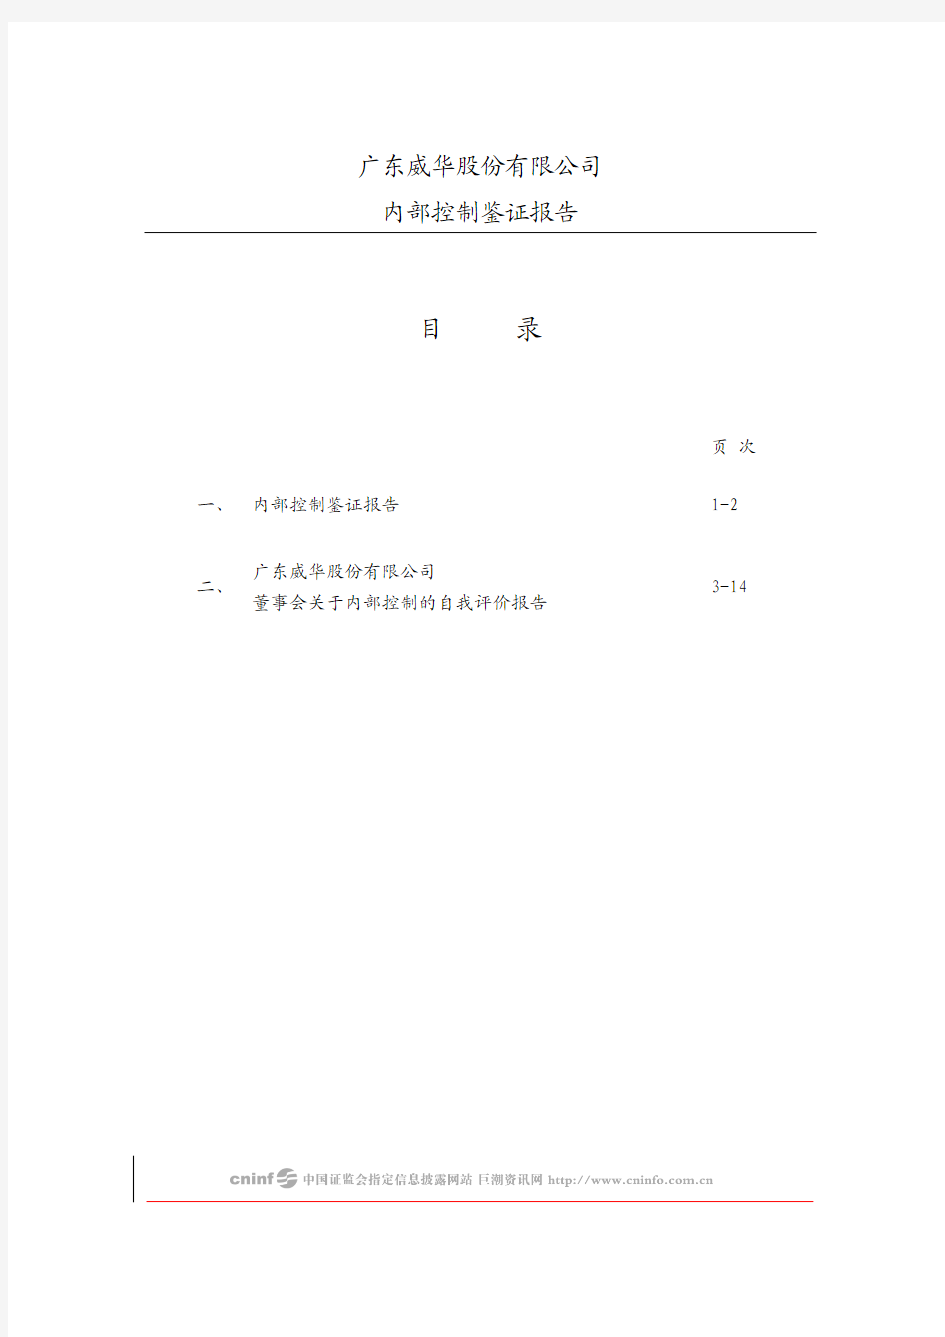 威华股份：内部控制鉴证报告 2010-04-10